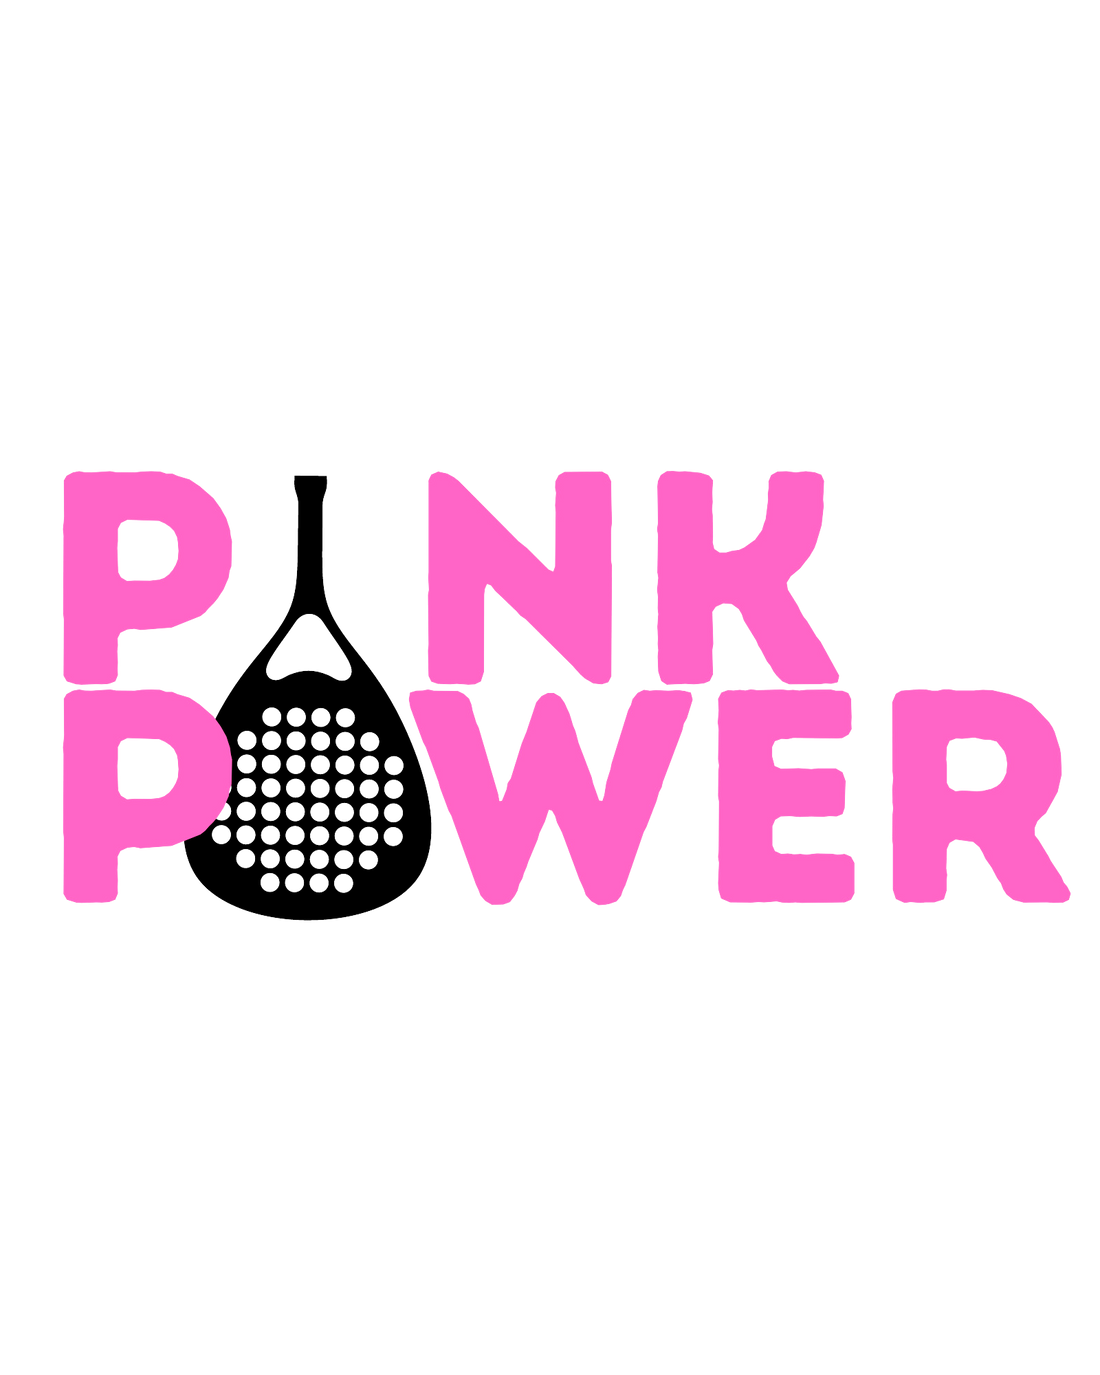 Colección PINK POWER, la más solidaria